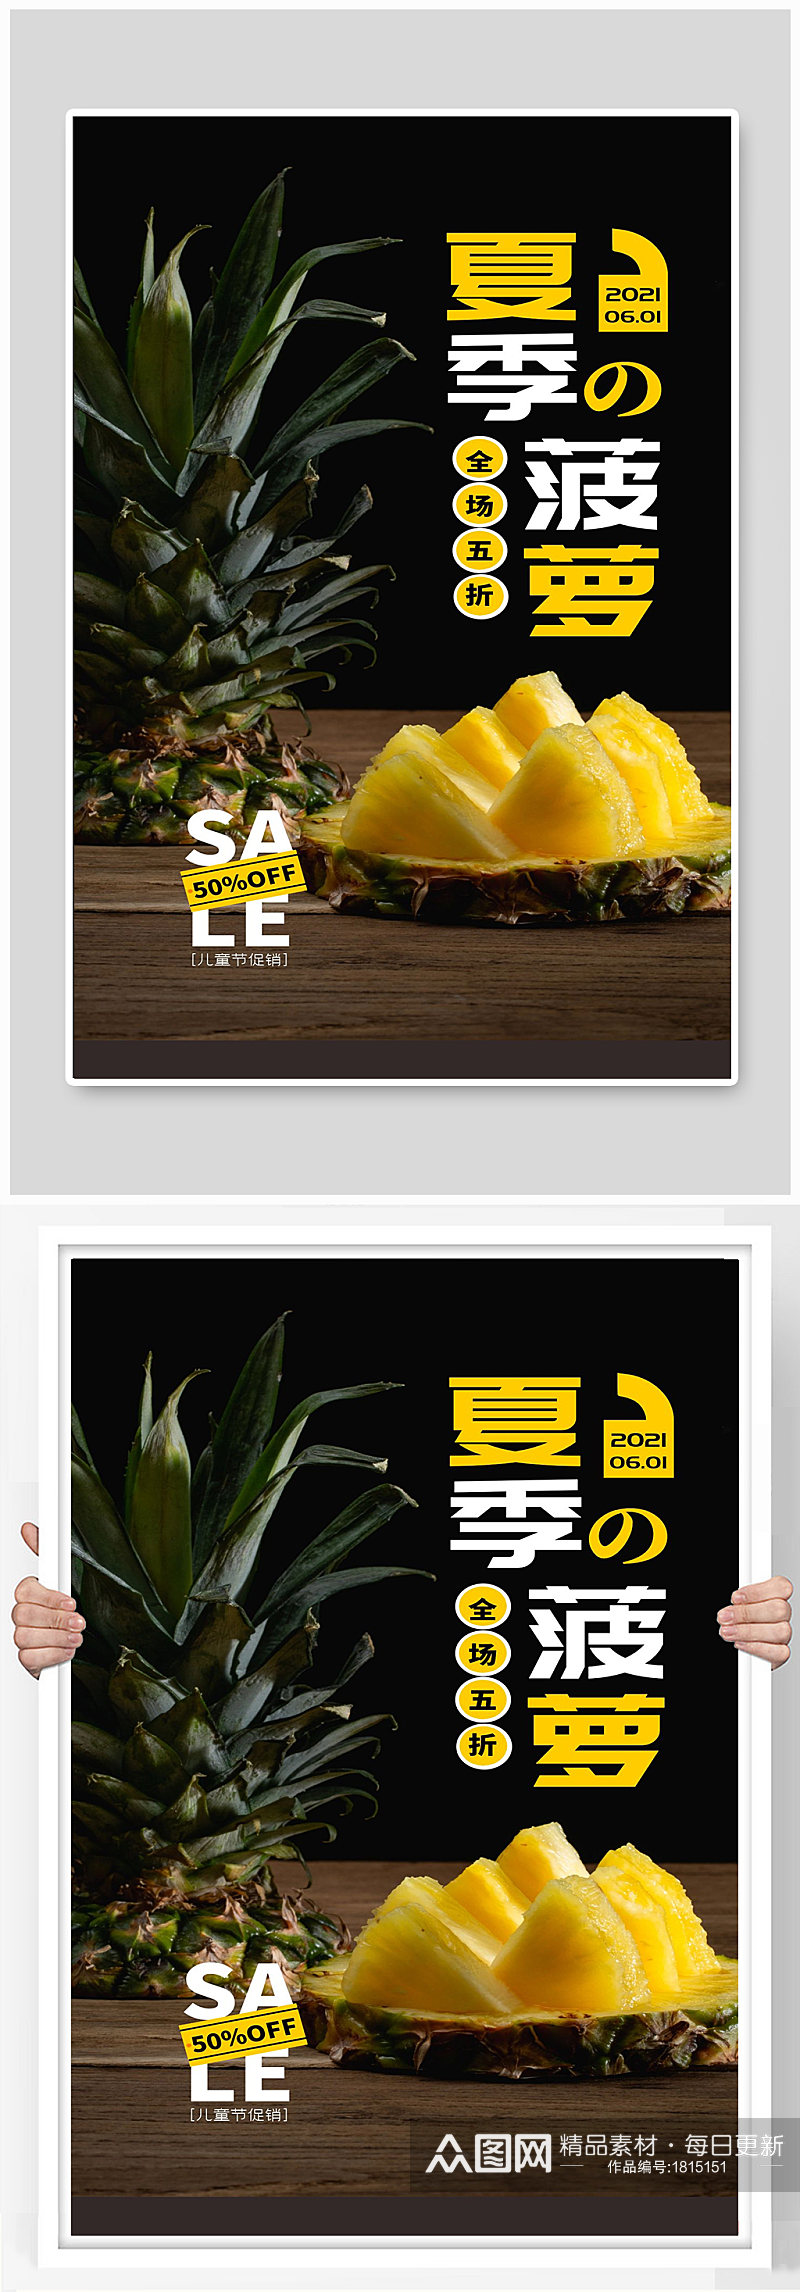 夏季菠萝全场五折水果特卖宣传海报素材